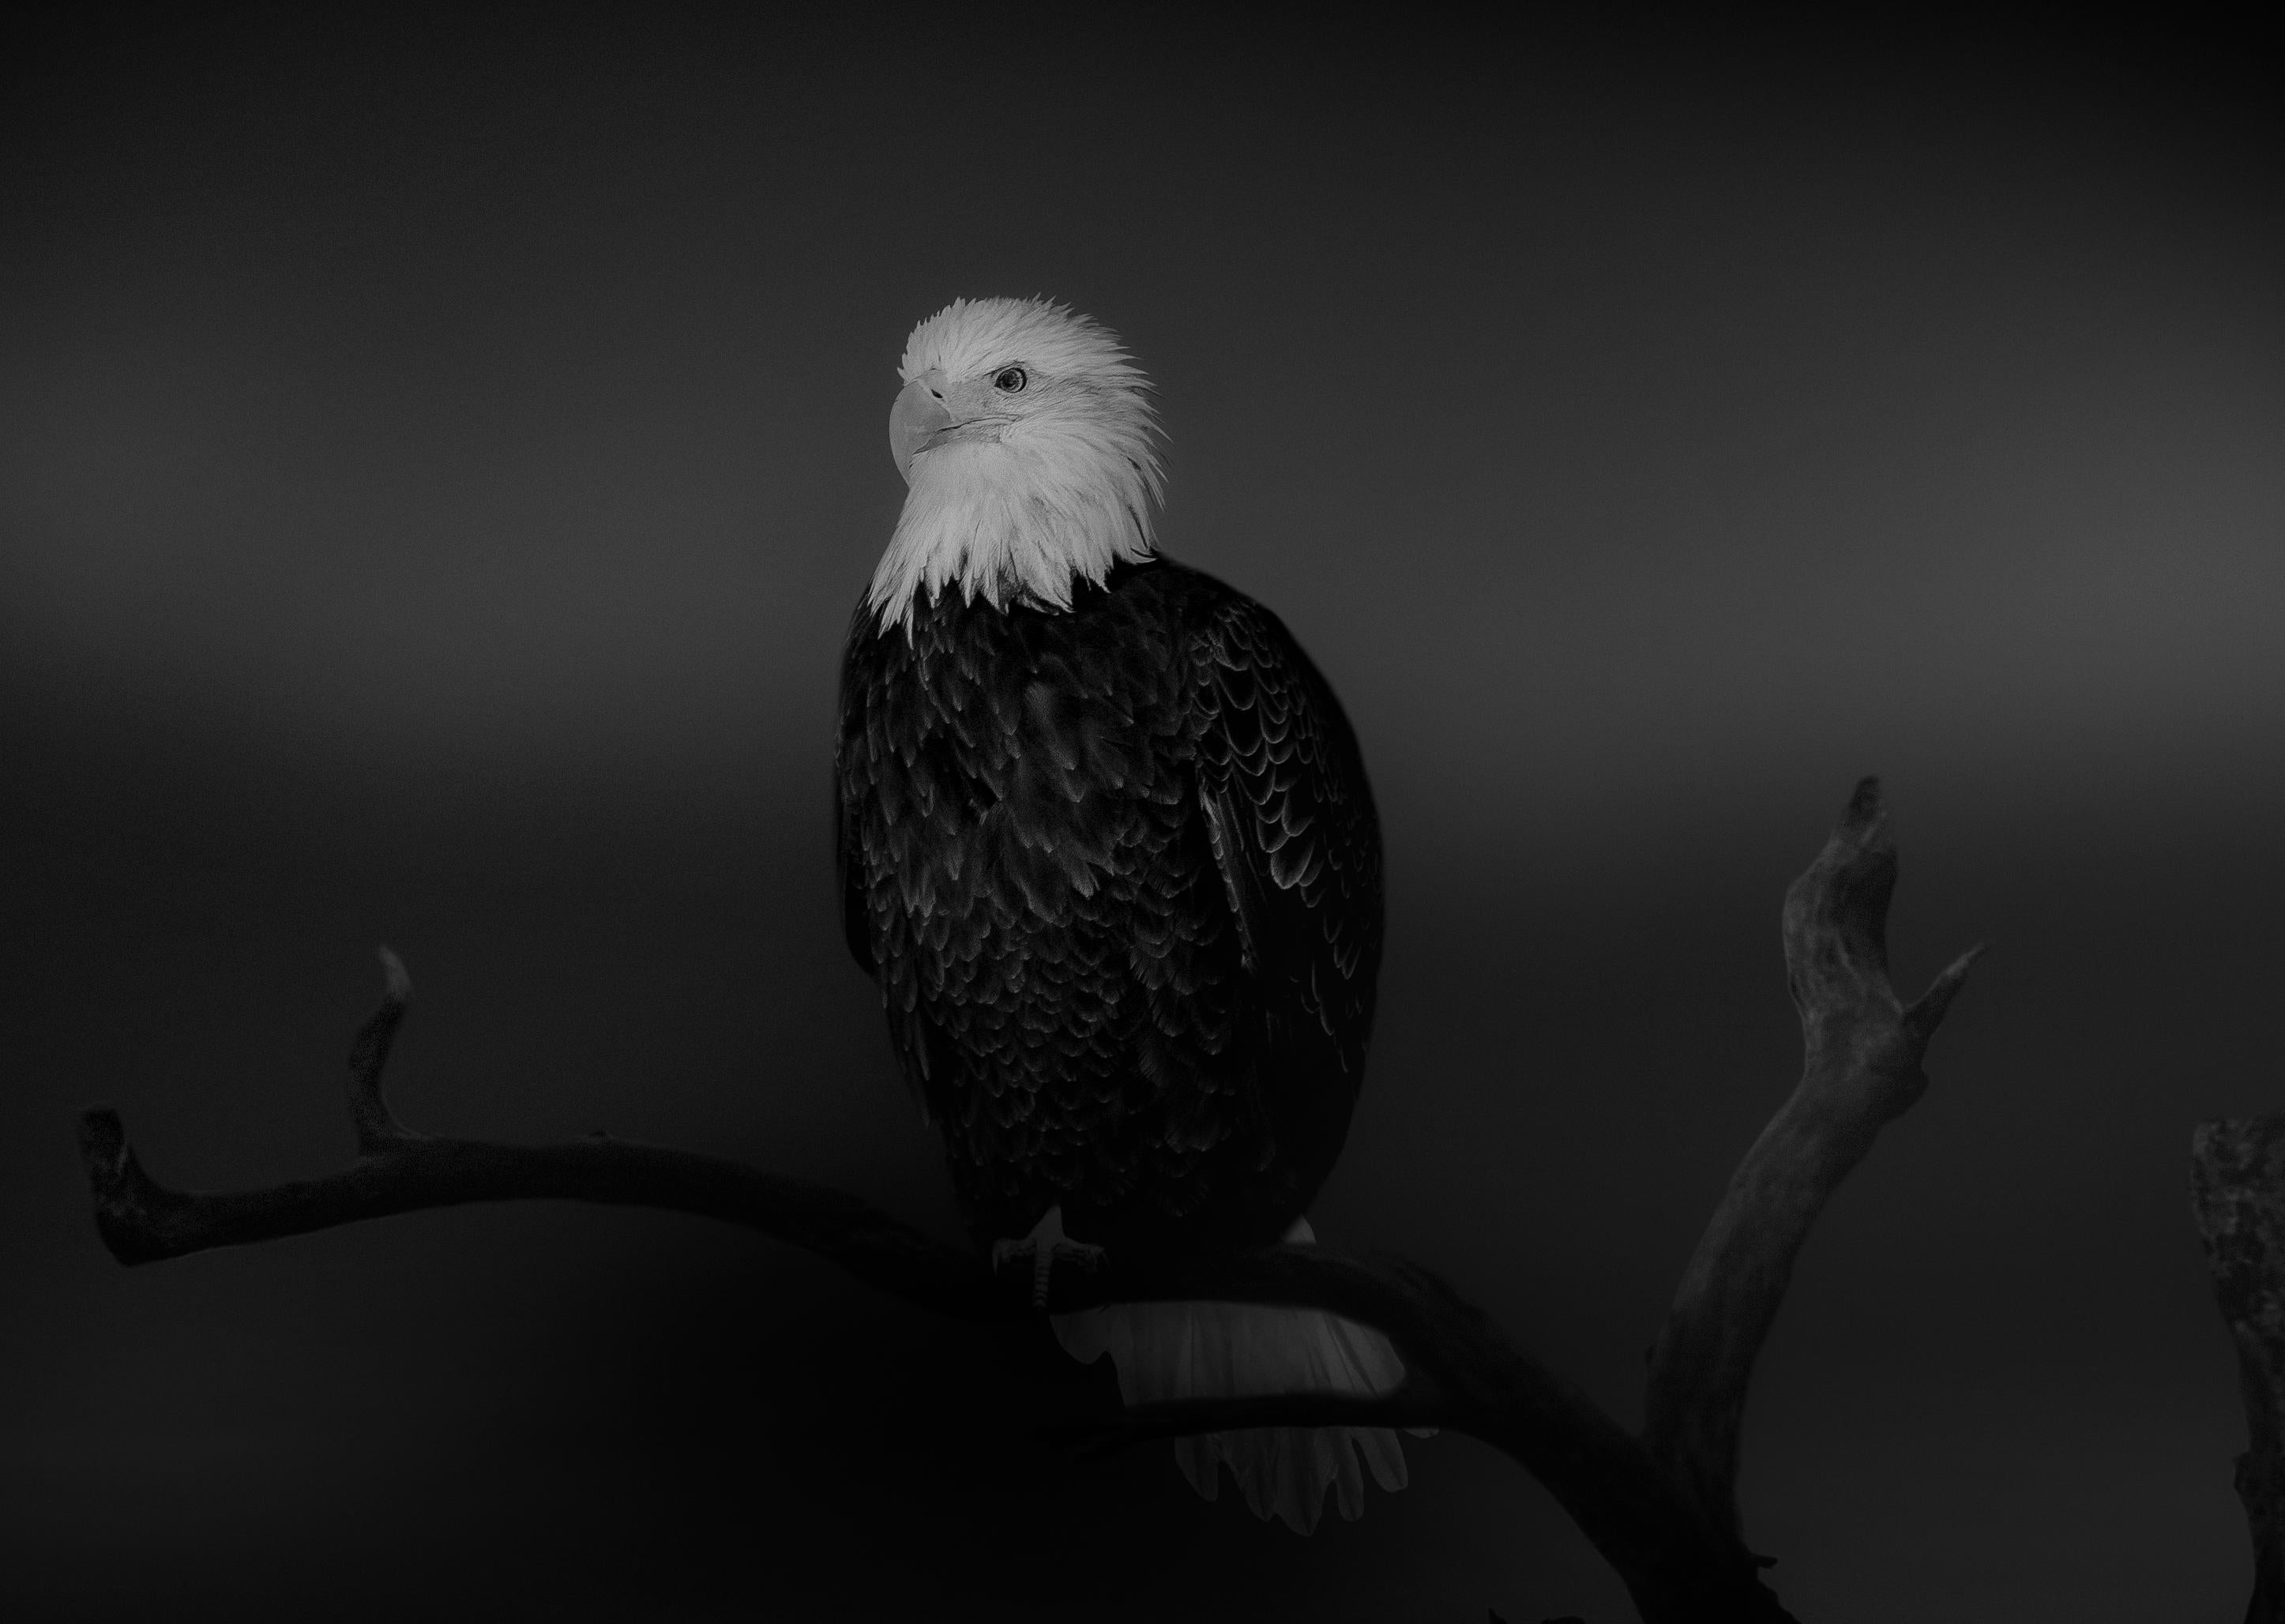 Animal Print Shane Russeck - « Ball Eagle » 36x48 - Photographie en noir et blanc, photographie d'art